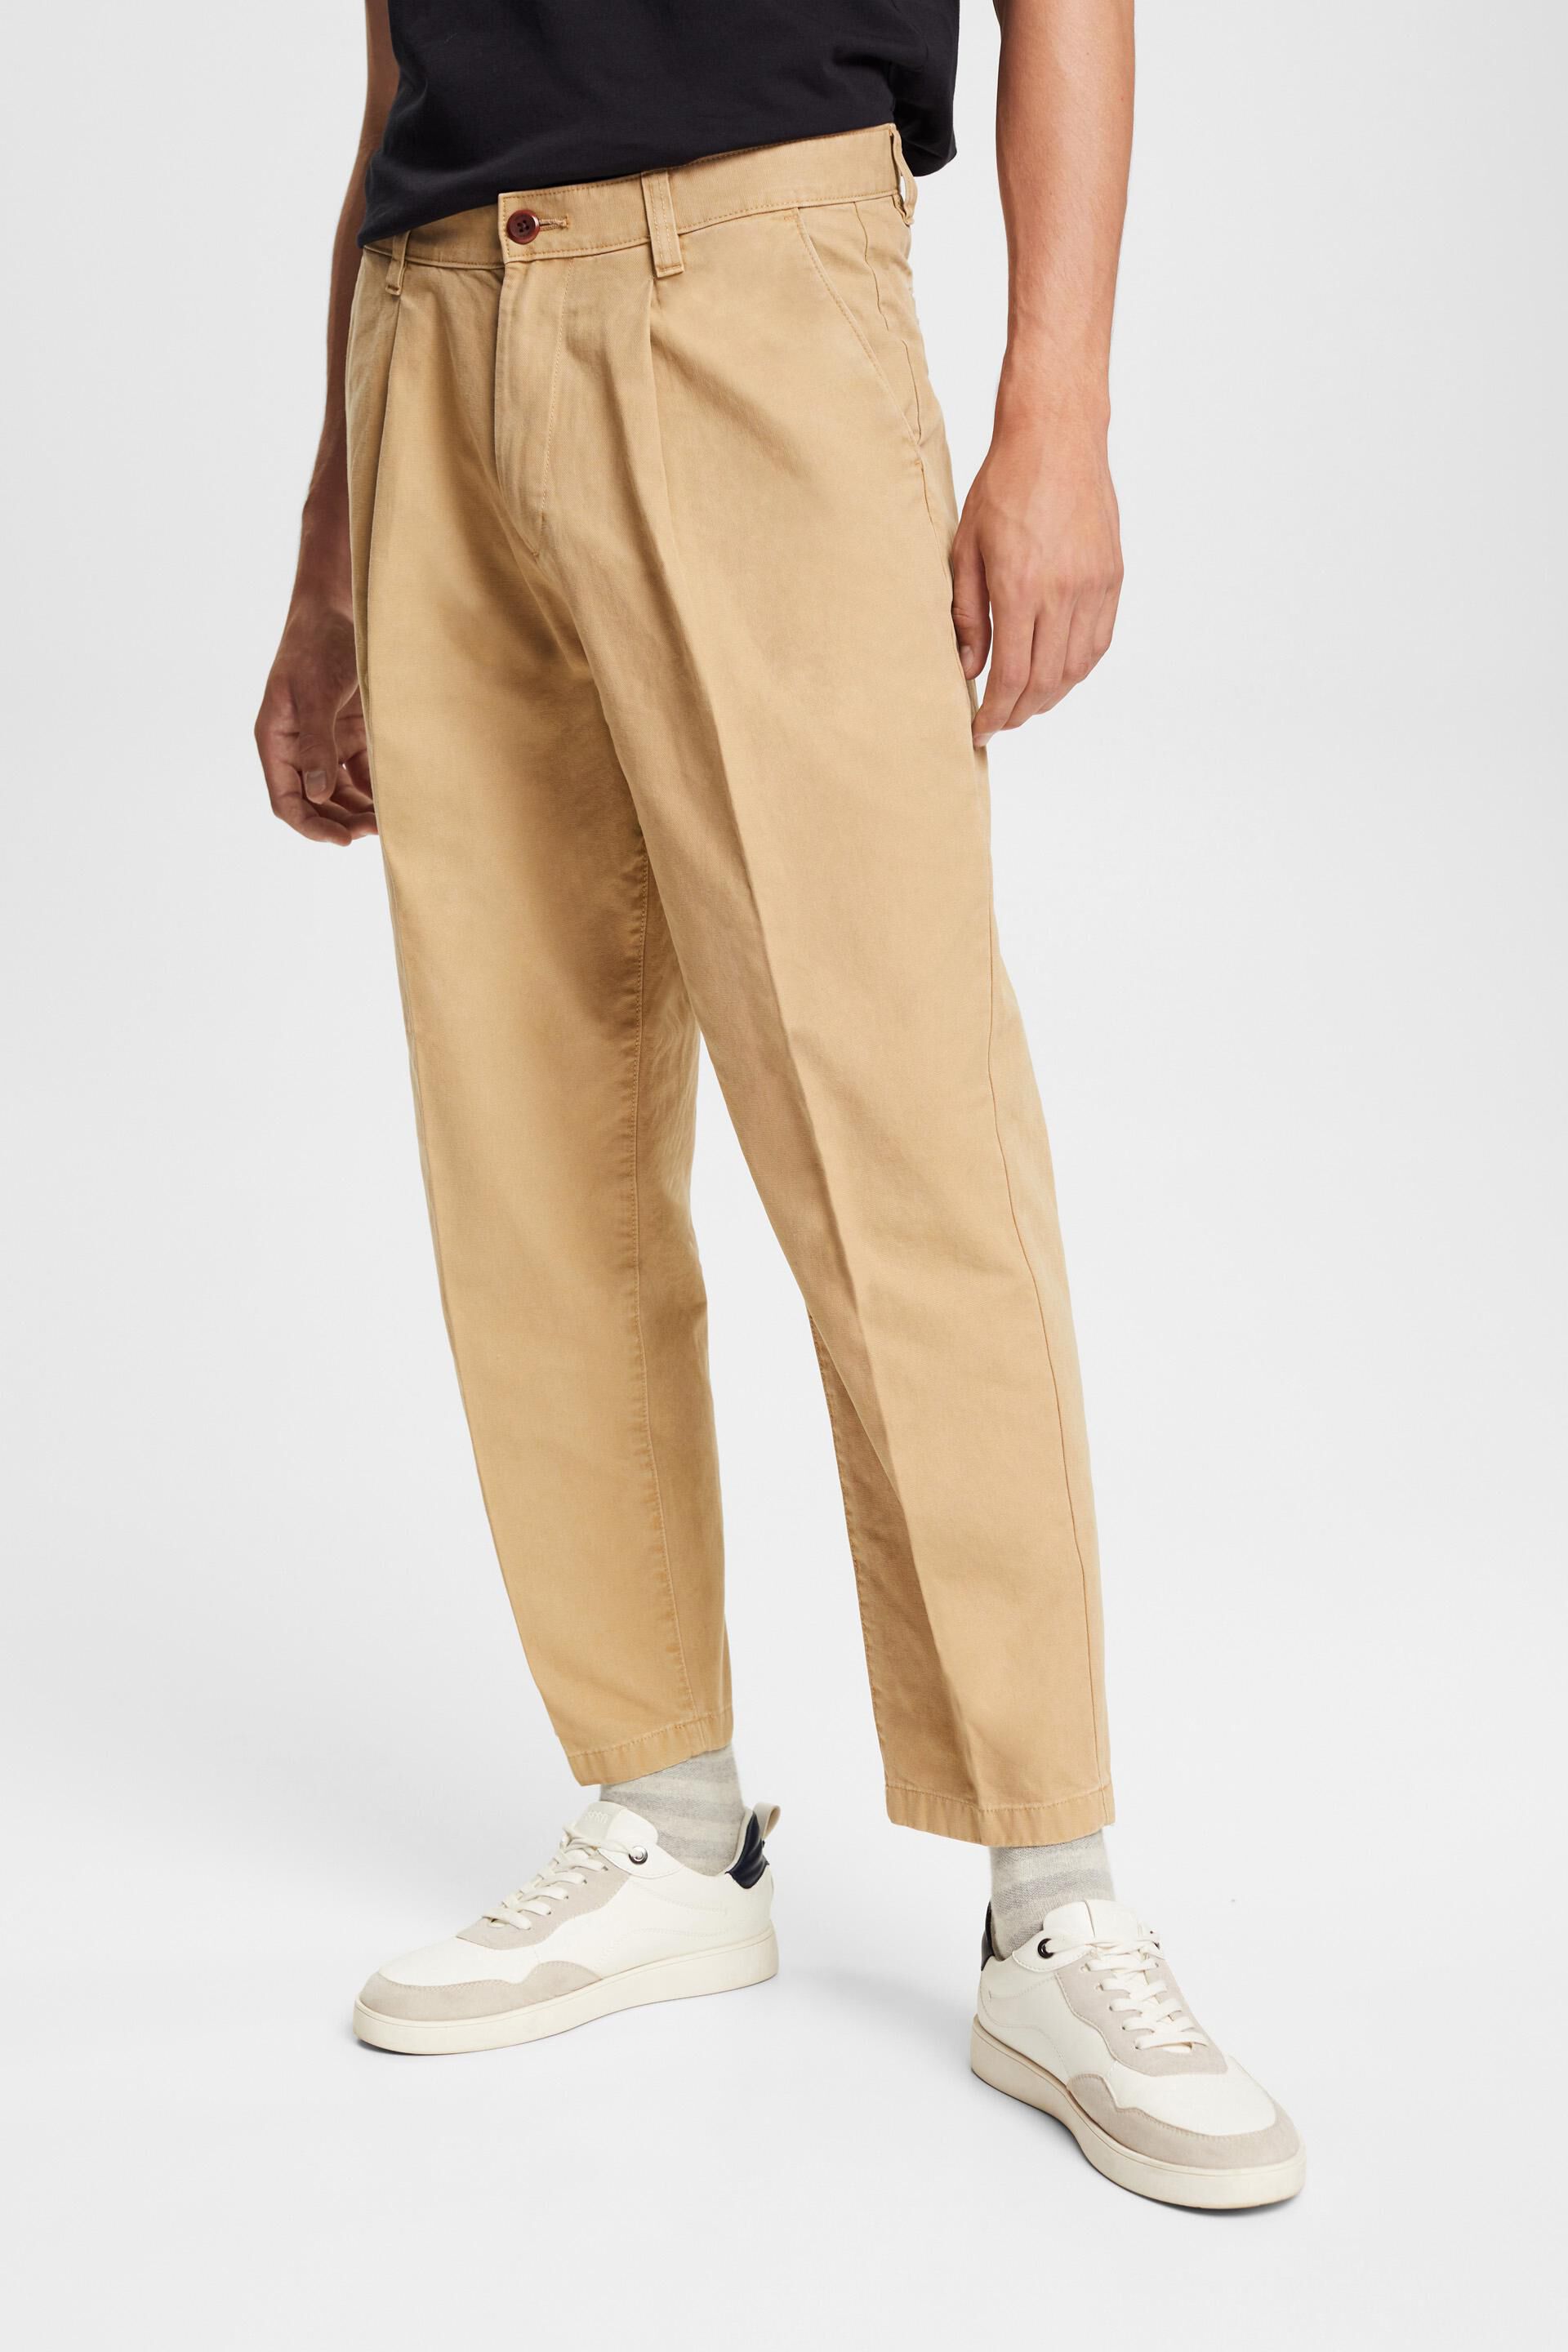 Suitable Herren Kleidung Hosen & Jeans Lange Hosen Chinos Dante Chino Dessin Kit Größe 94 